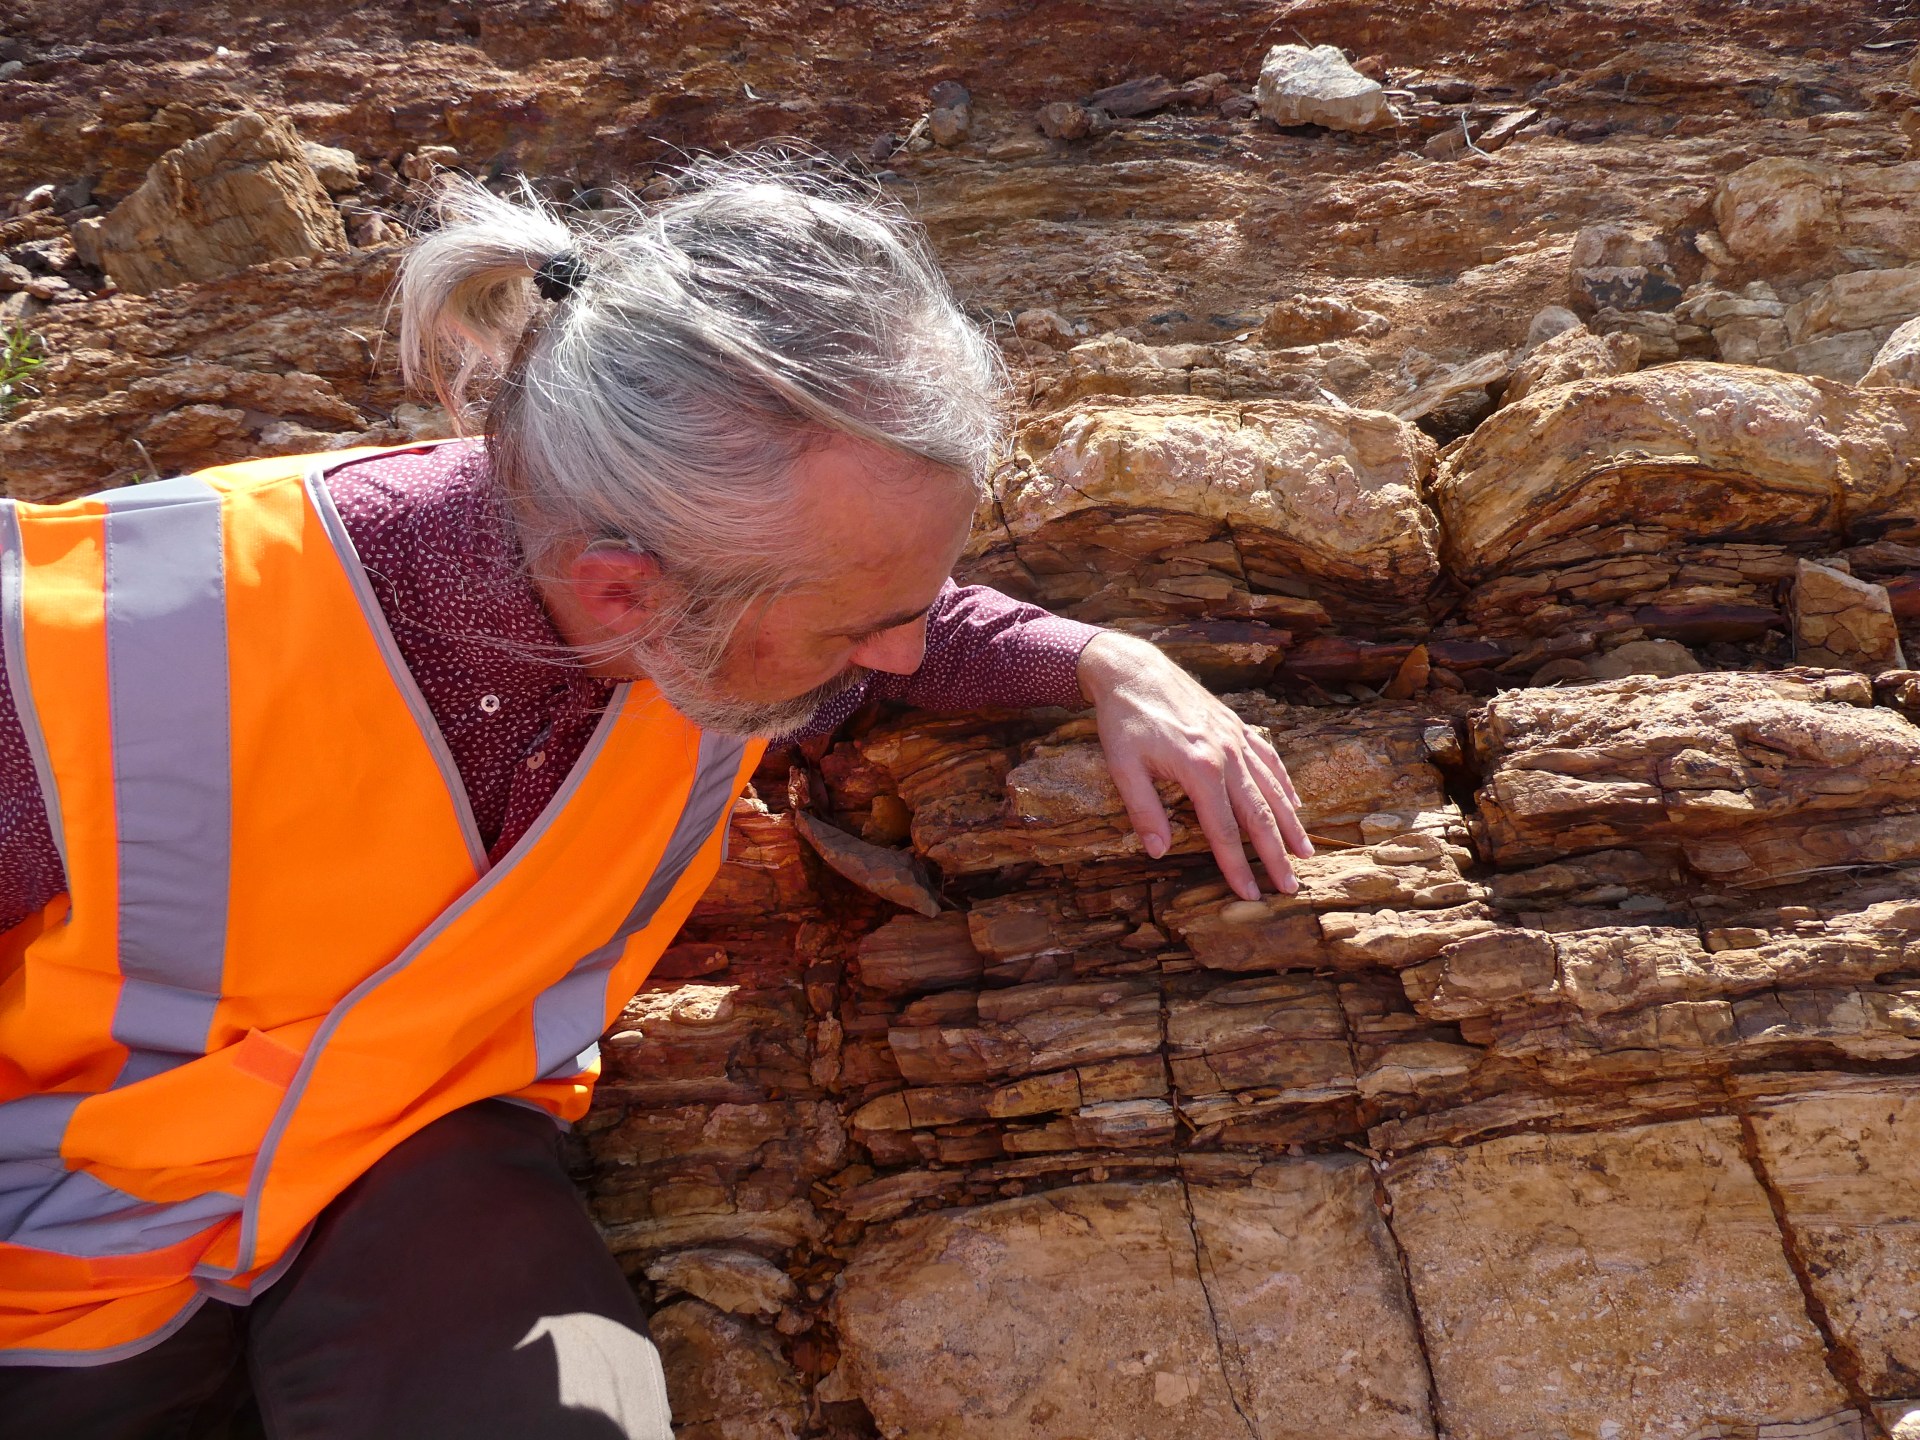 علماء يكتشفون “العالم المفقود” في صخرة أسترالية عمرها مليار عام |  أخبار العلوم والتكنولوجيا